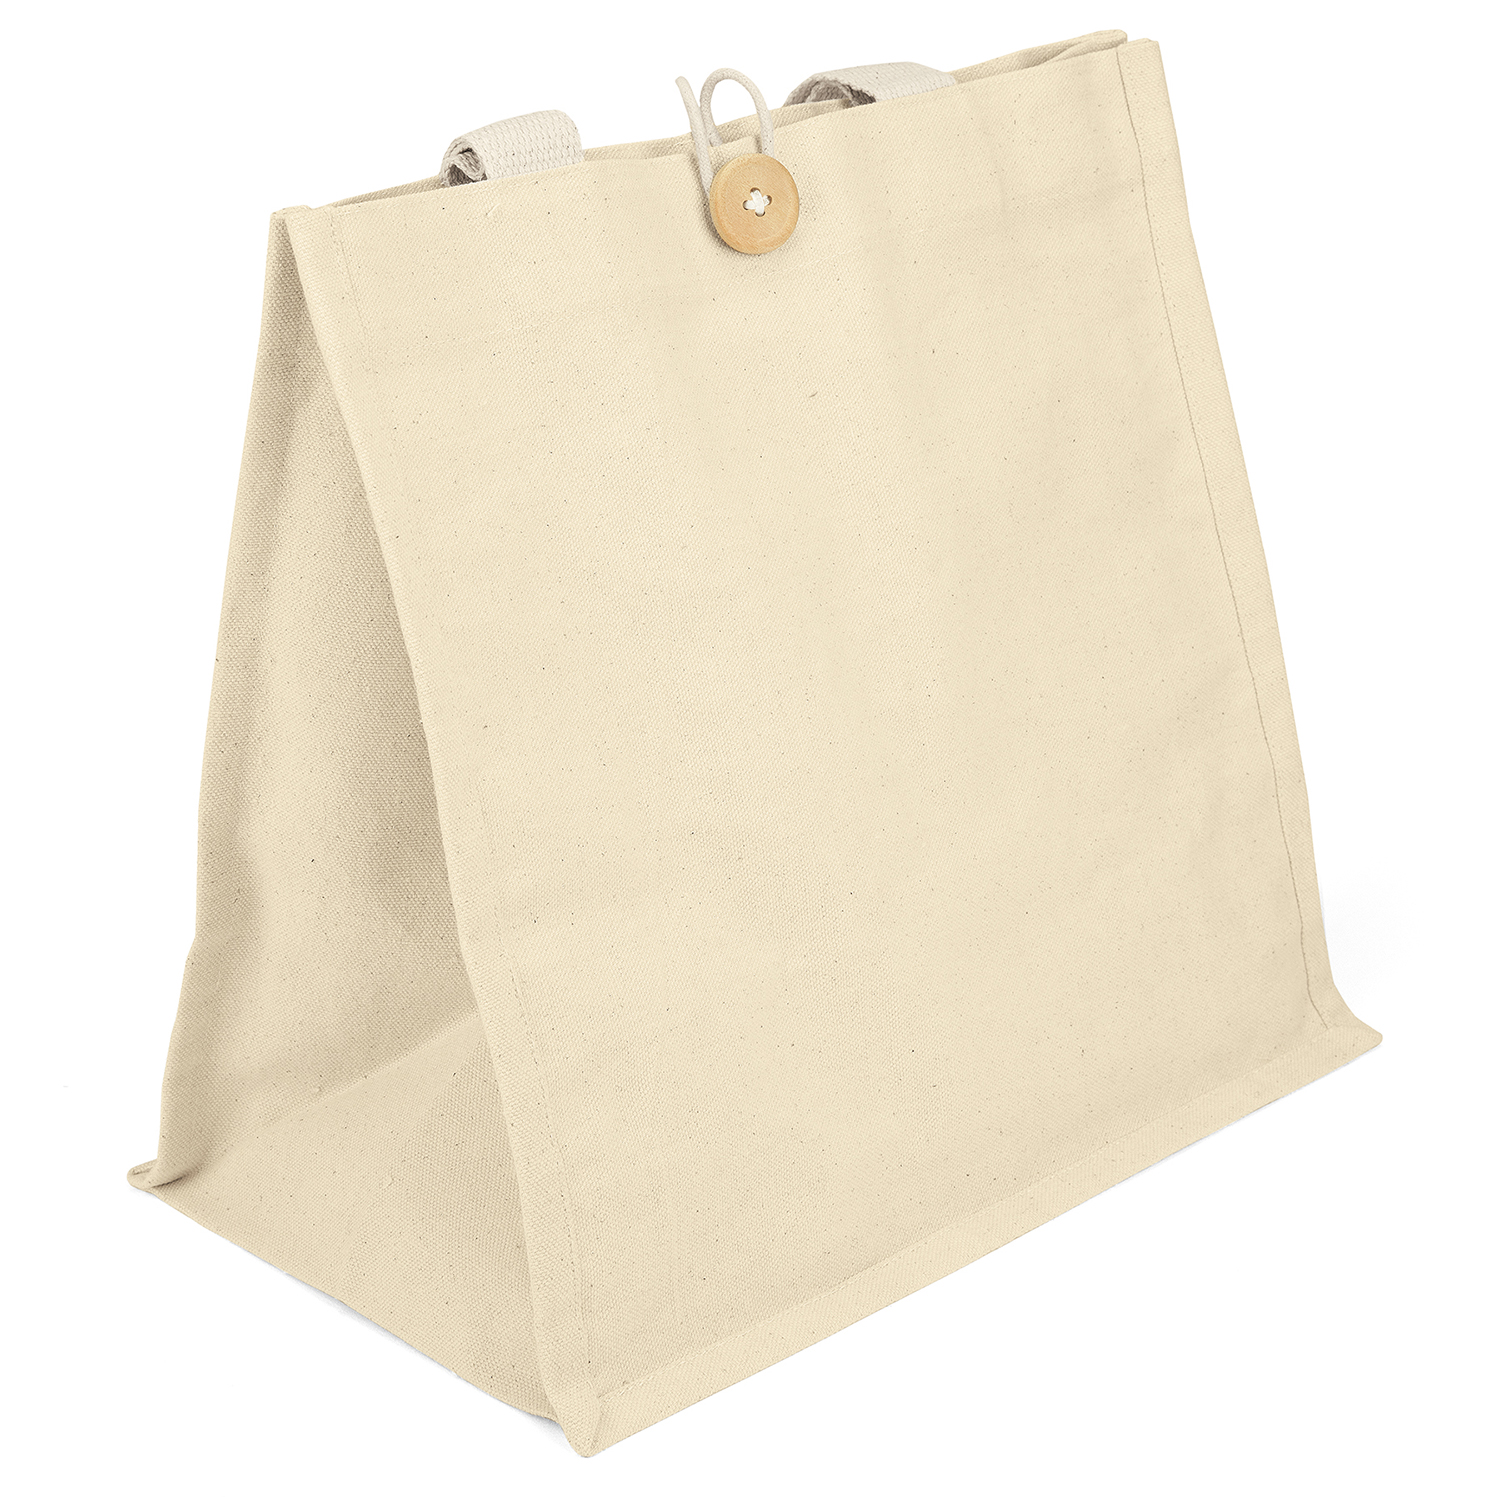 Bag Makers CVAU1313 - Custom Printed Reusable Tote Bag